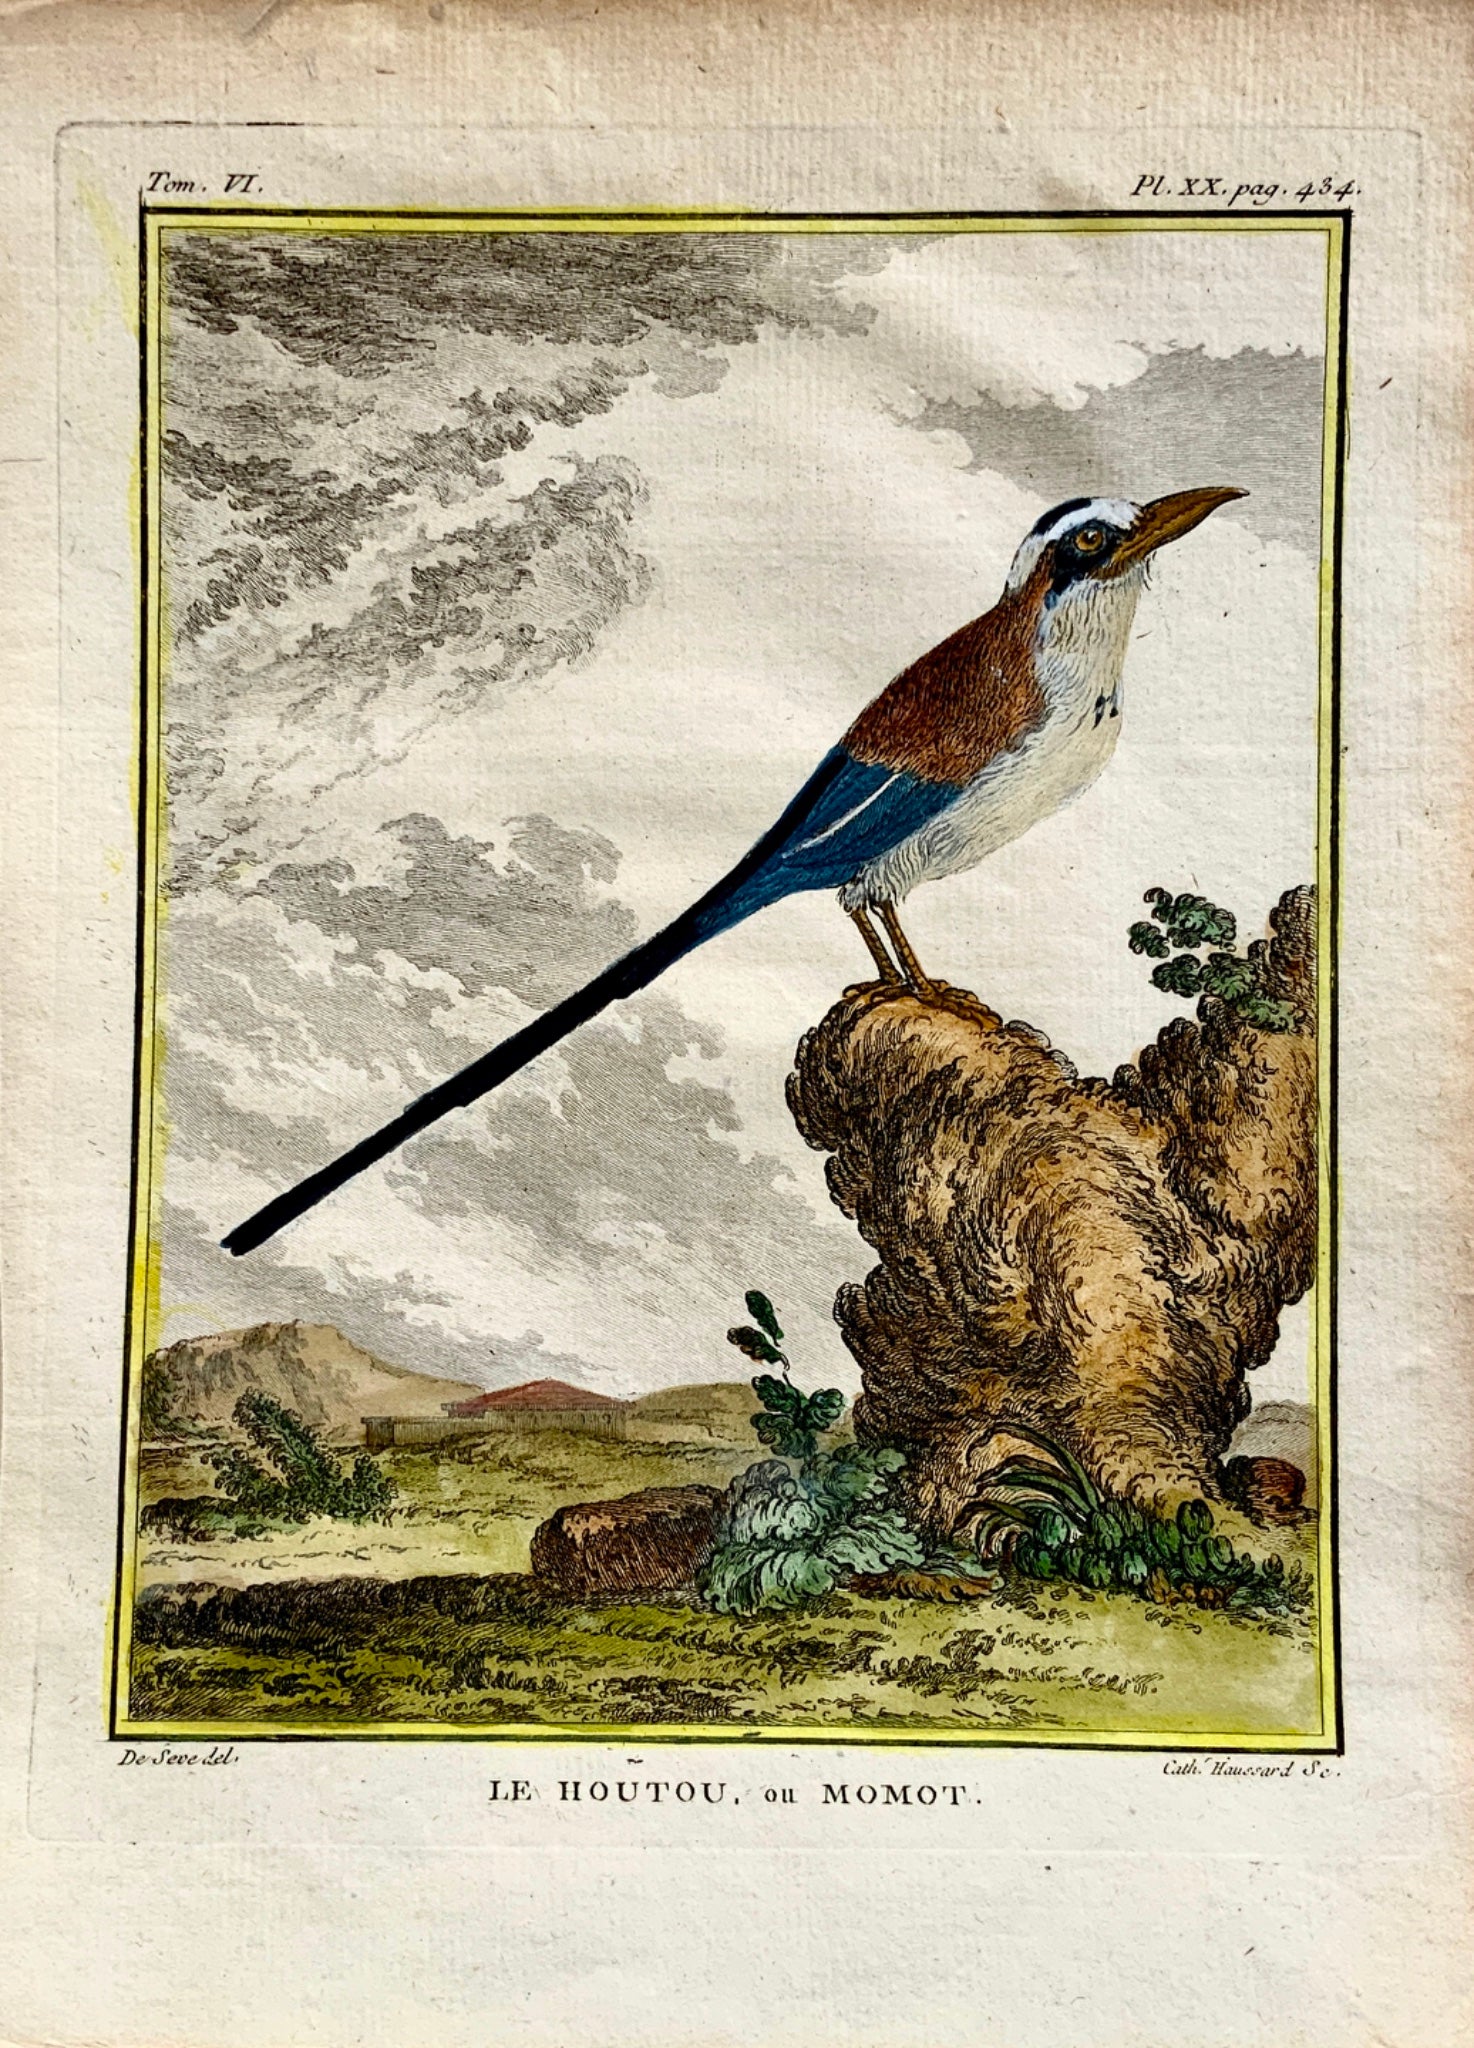 1779 Haussard after Jacques de Seve - Le Houtou ou Momot Bird- 4to engraving